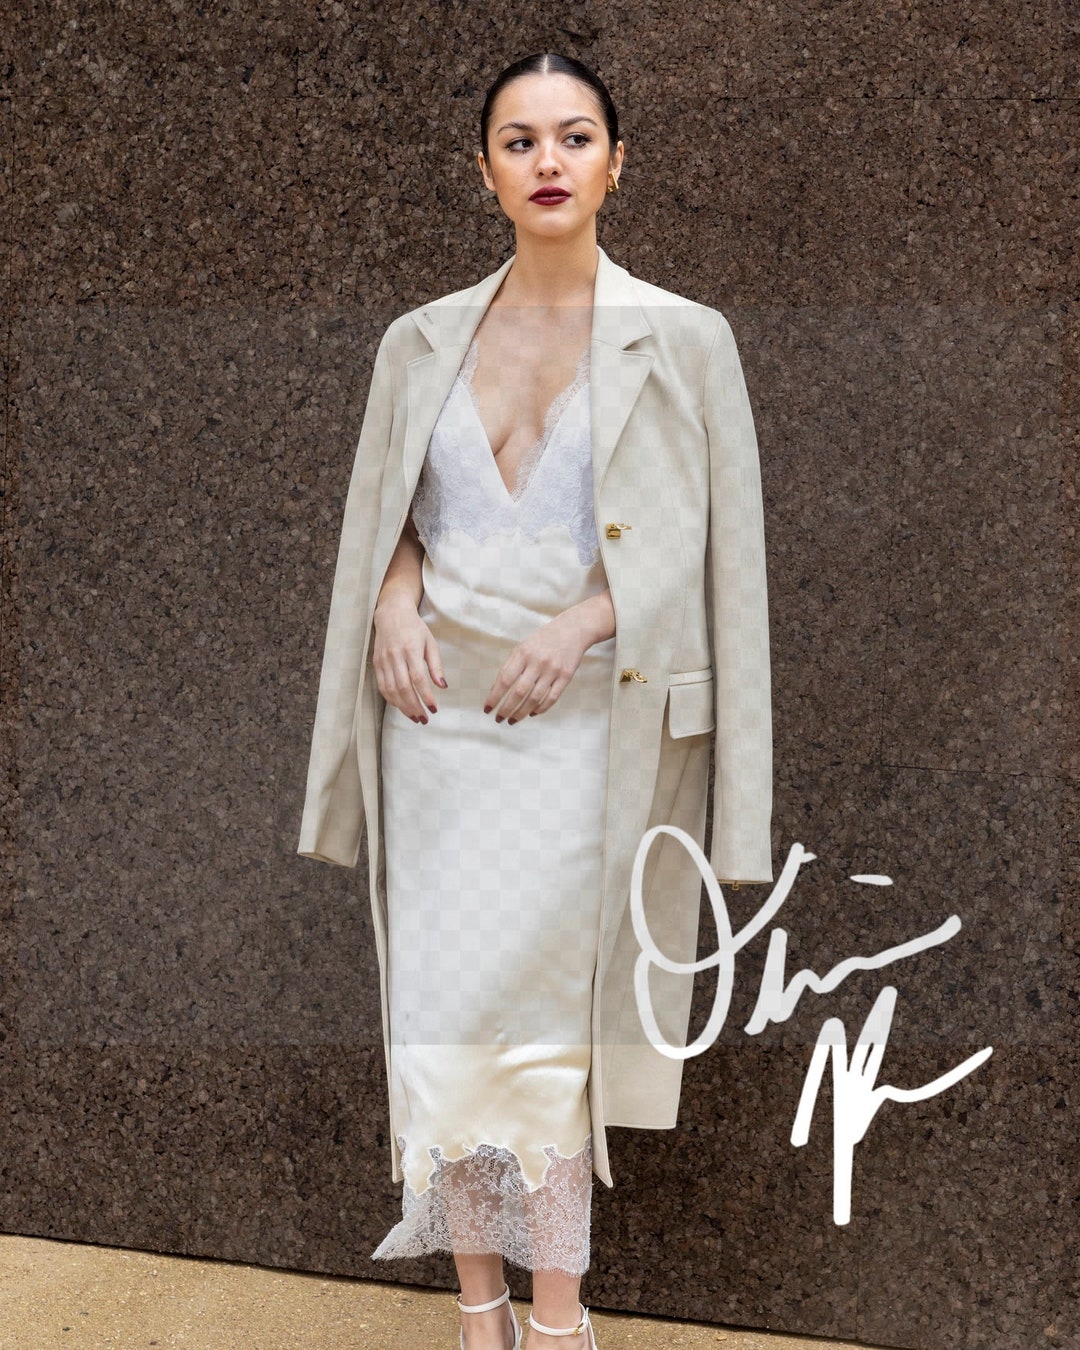 Olivia Rodrigo Signed Autographed Photo White Dress Cleavage - Etsy